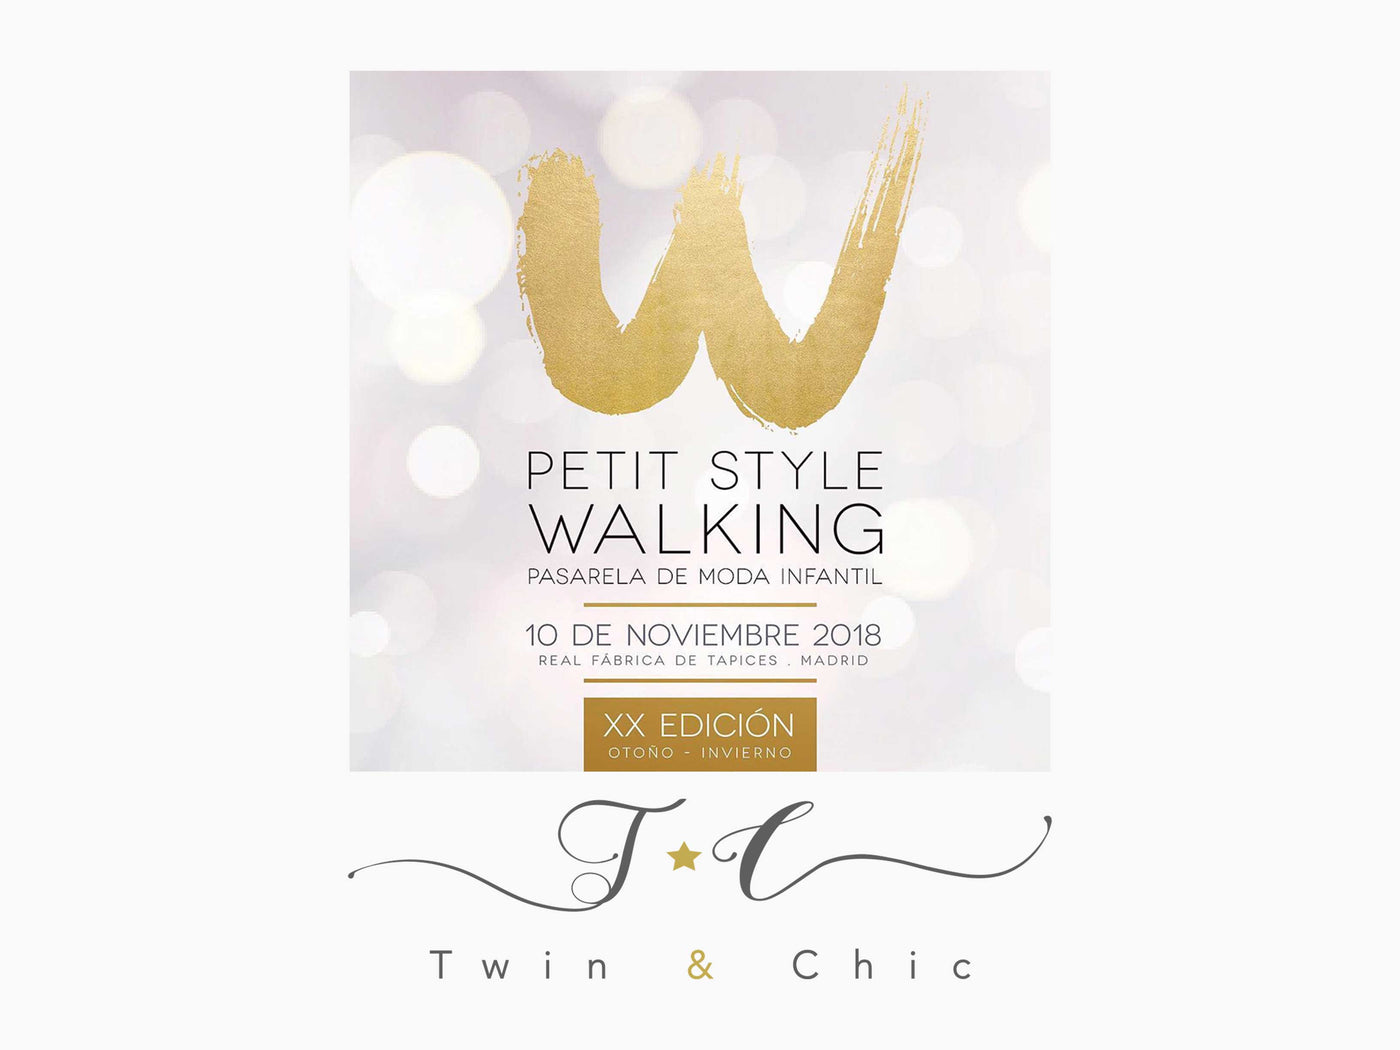 ¡Twin&Chic desfila en Madrid!